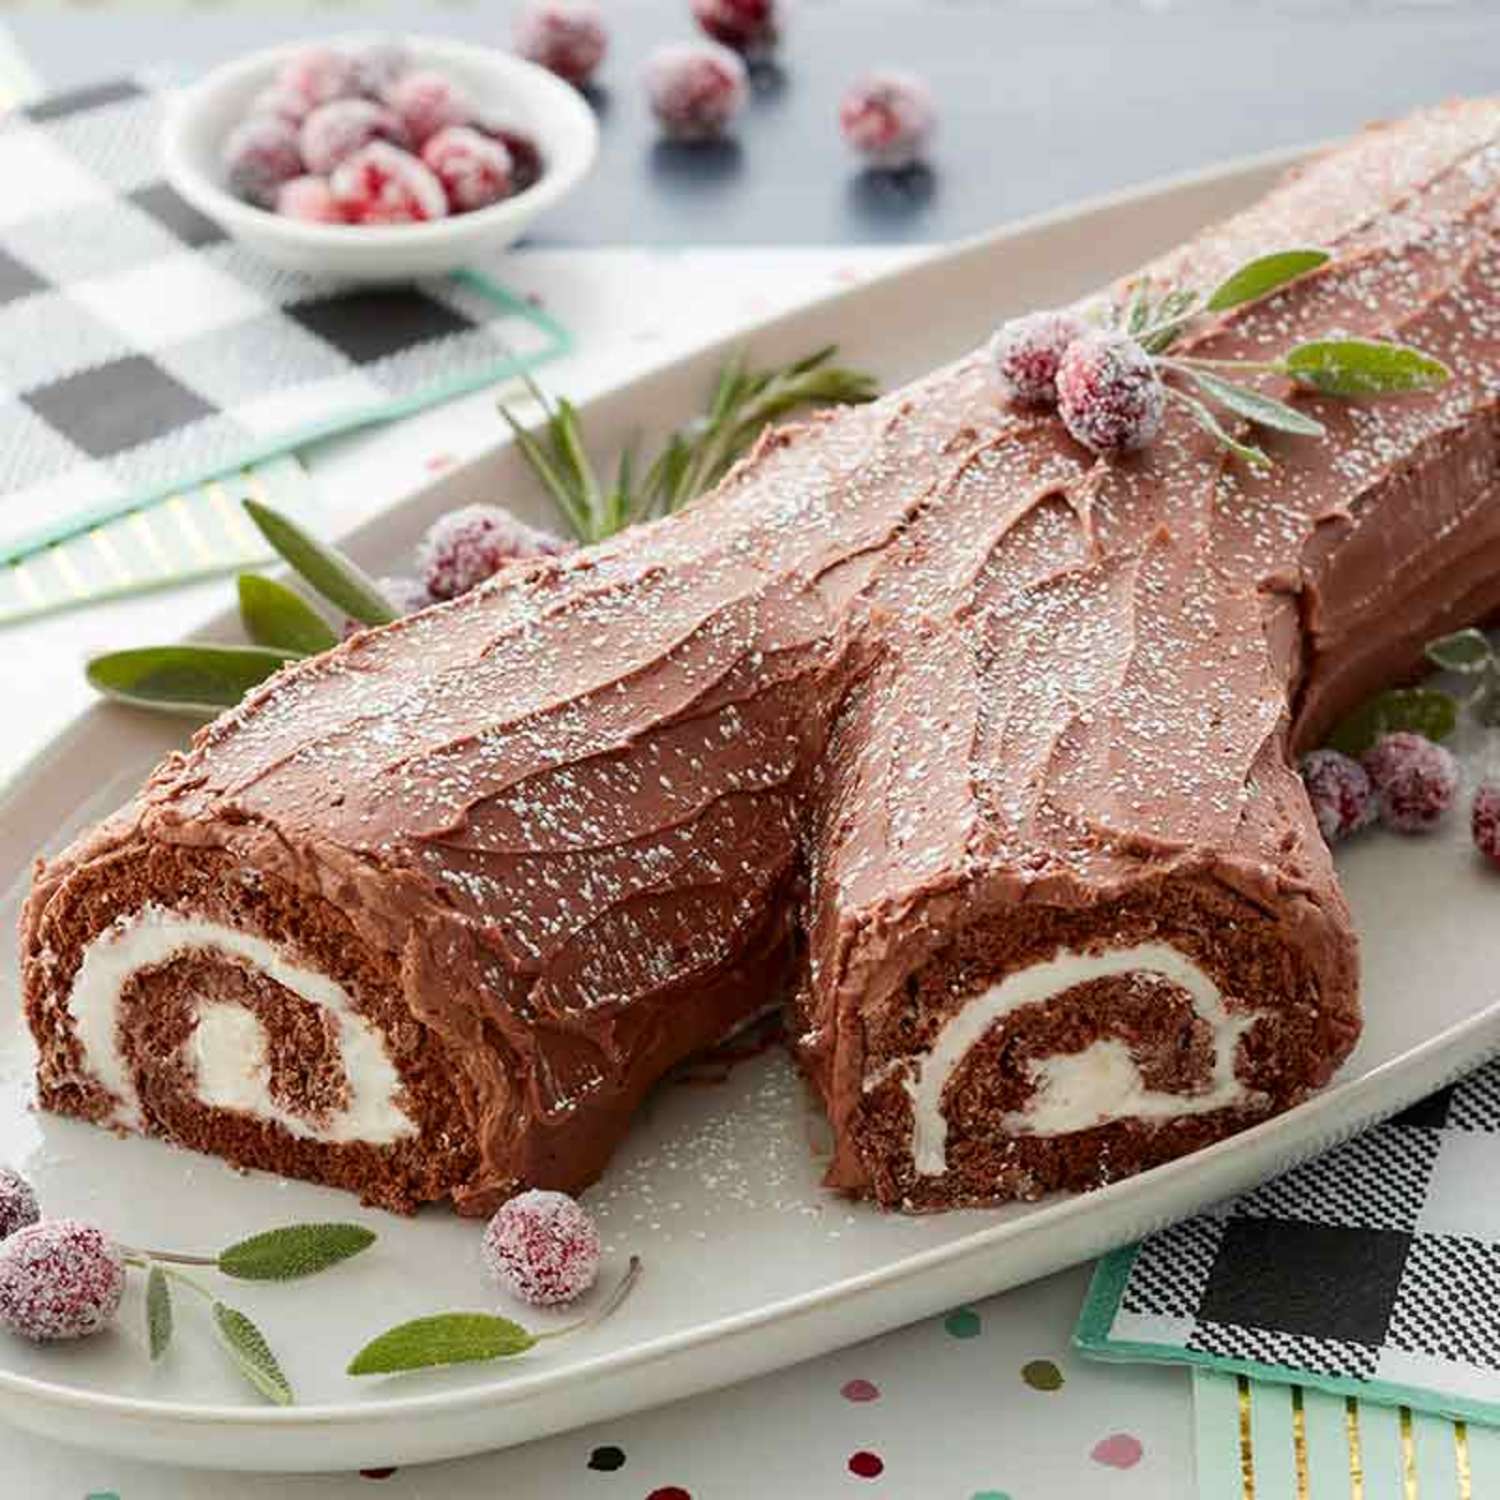 Easy Yule Log Cake for Christmas/Buche de Noel/Yule log recipe/Yule log cake /Chocolate log cake 